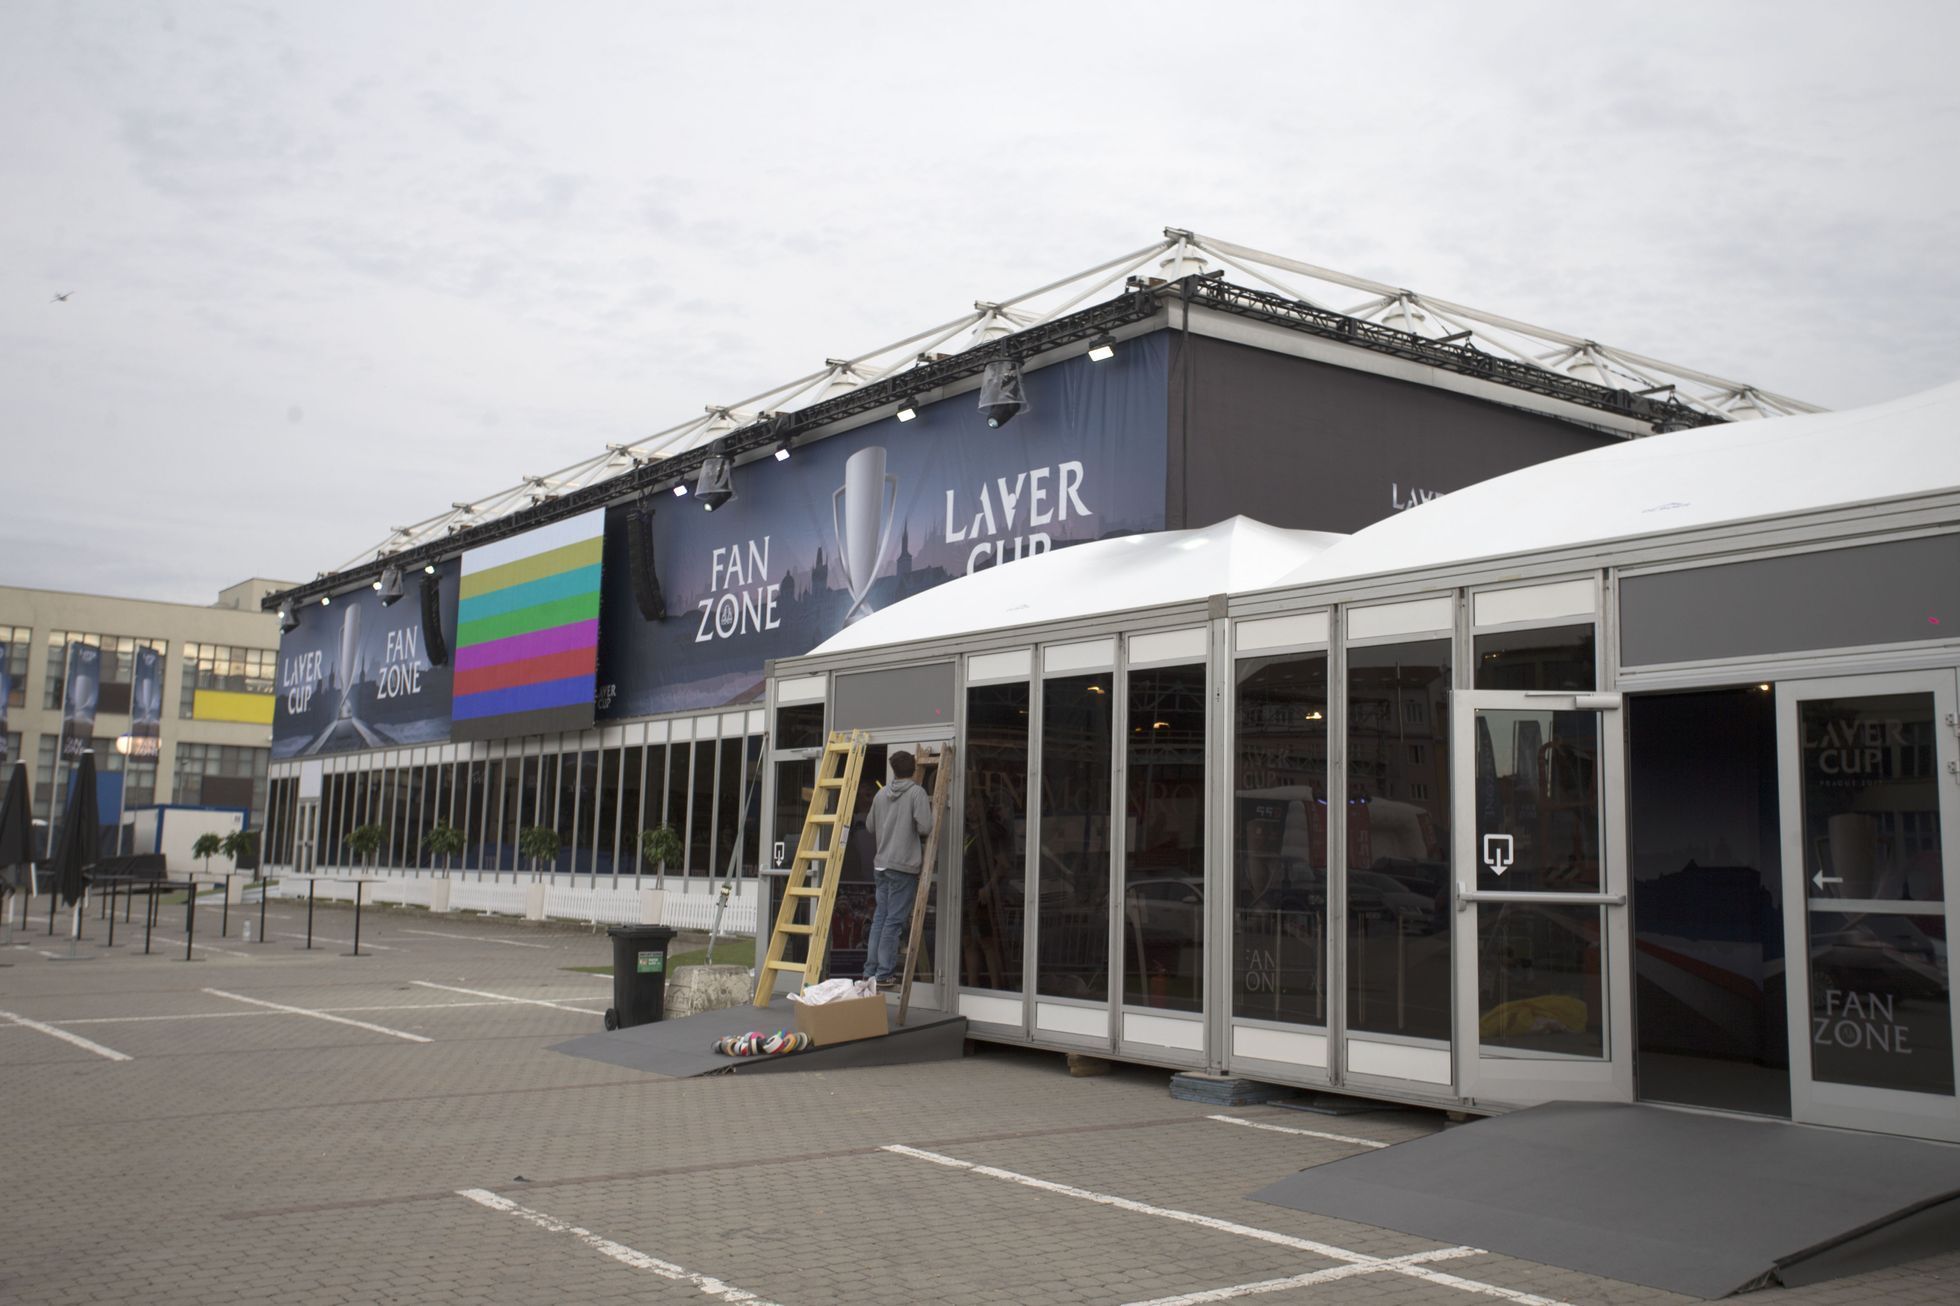 Laver Cup 2017, Praha, O2 arena